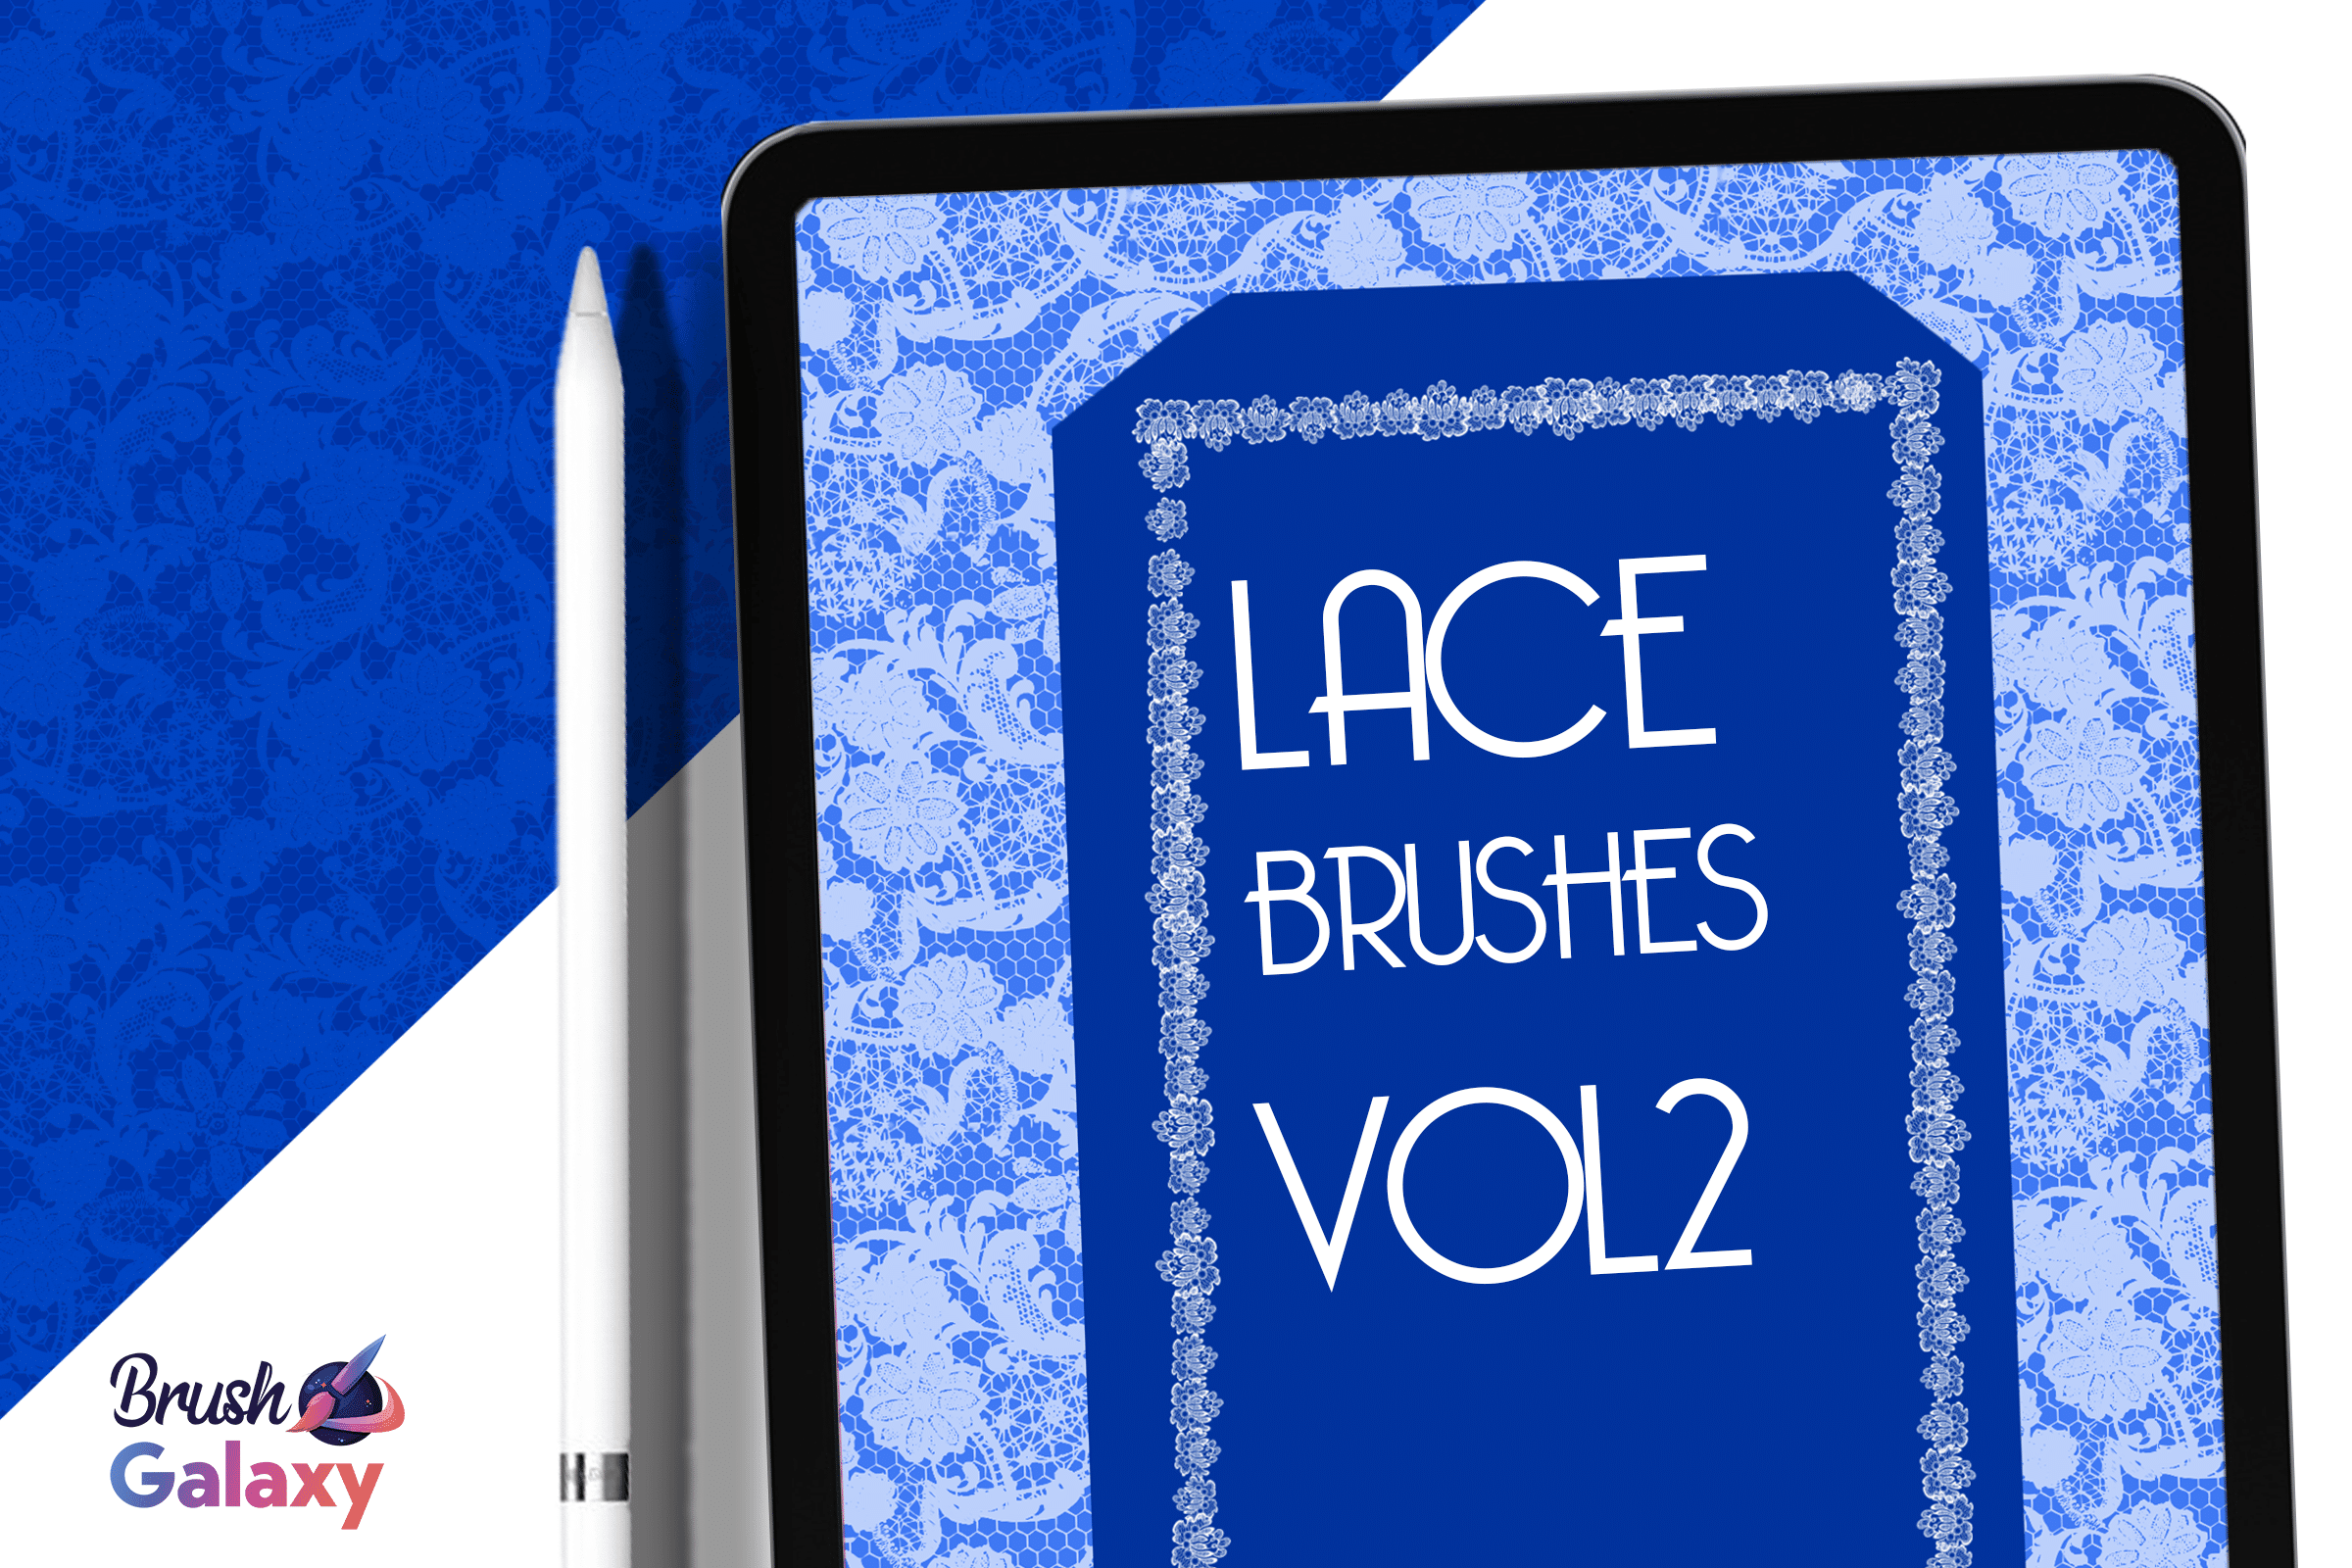 Lace Brush Set Vol 2